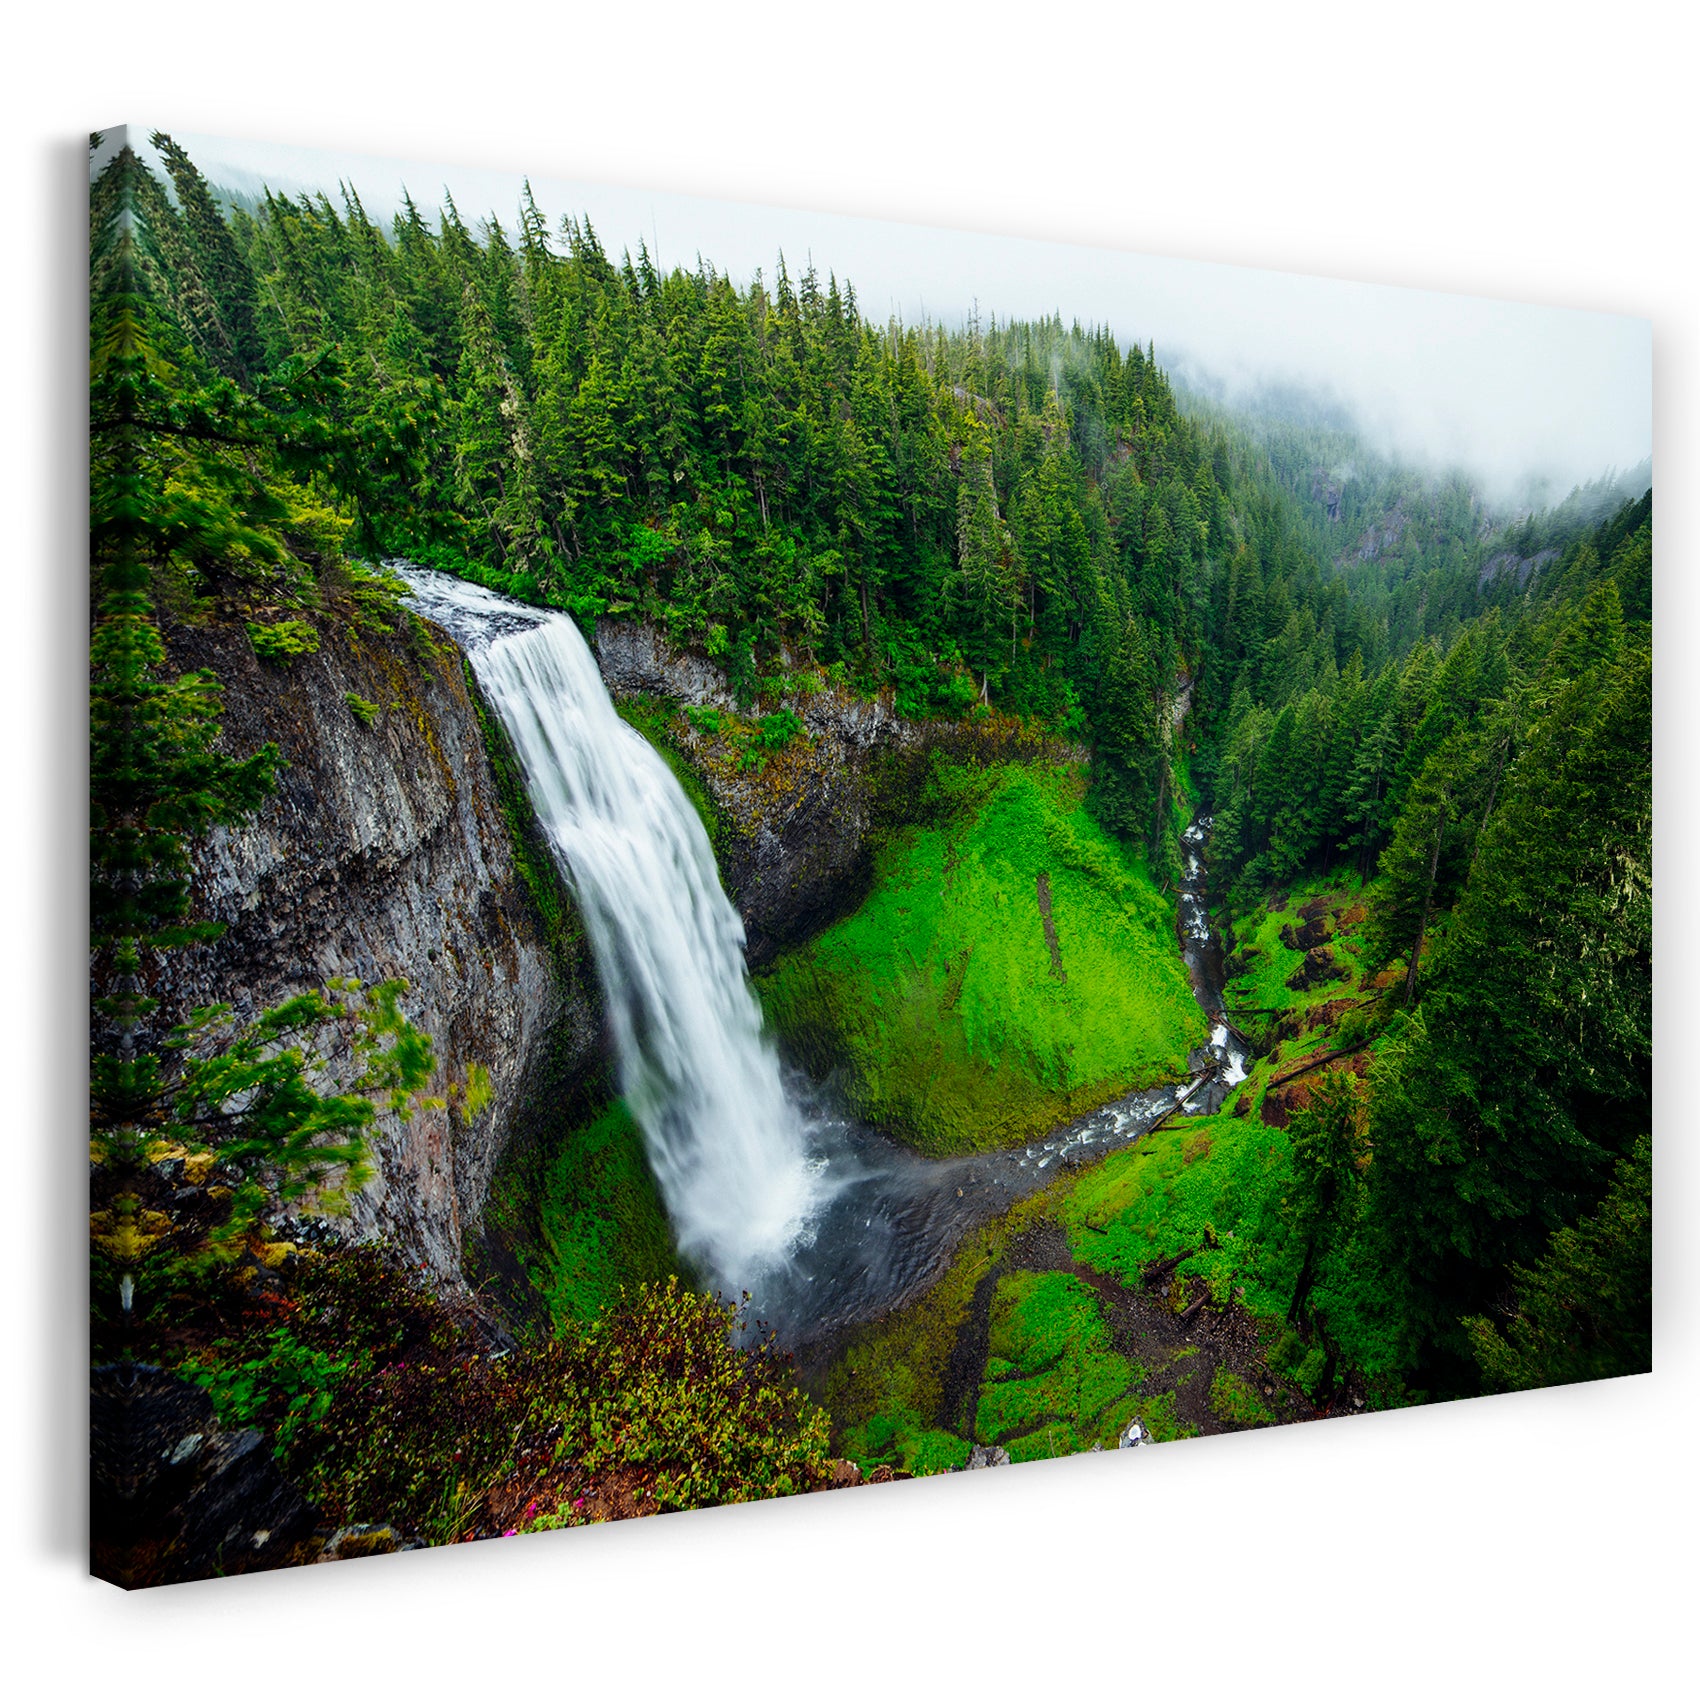 Leinwandbild Traum-Landschaft Wald forest hills grün Natur-Bilder Wasserfall Berge